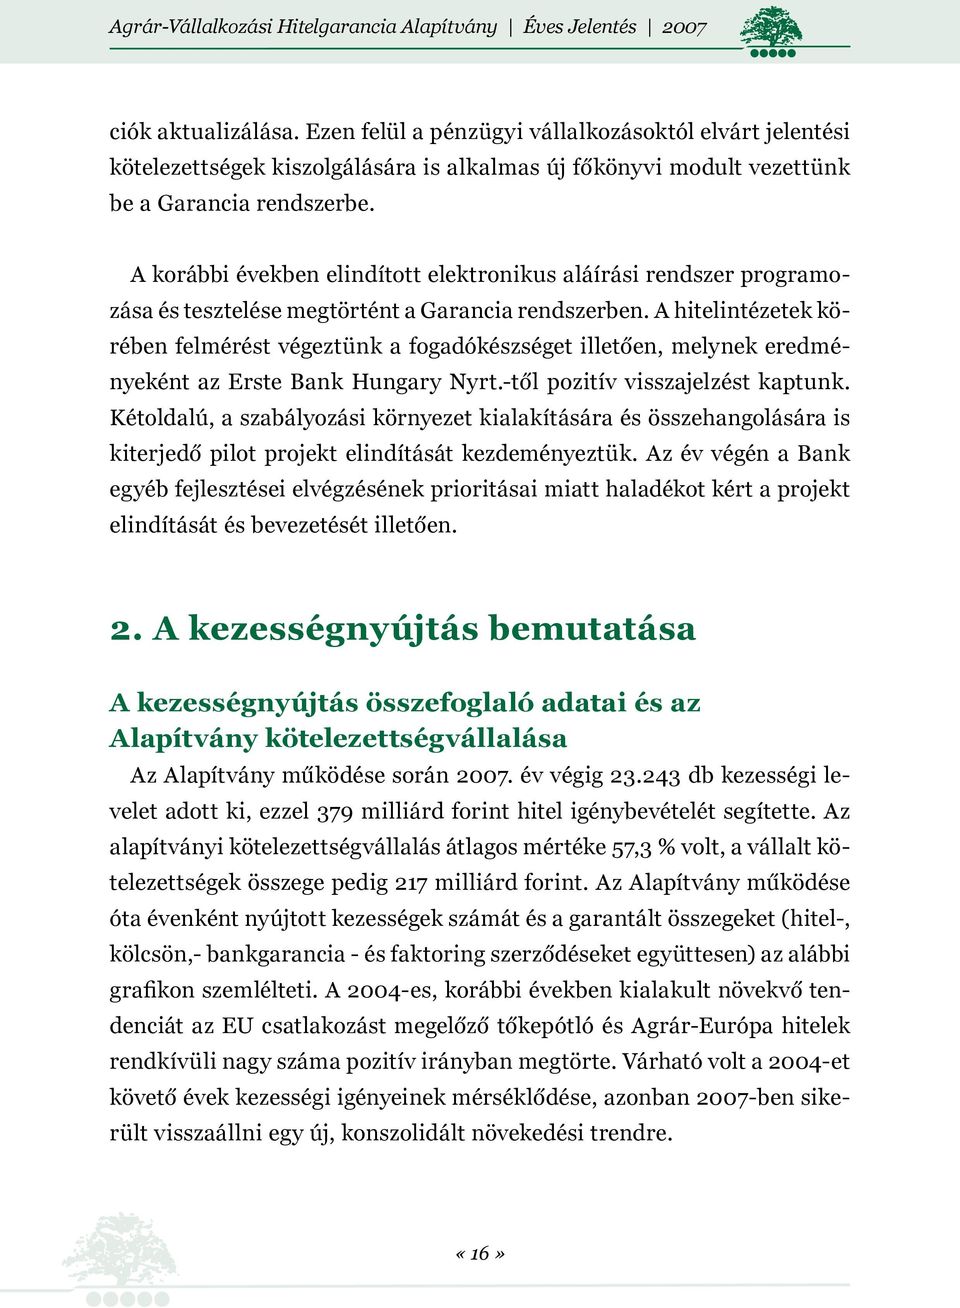 A hitelintézetek körében felmérést végeztünk a fogadókészséget illetően, melynek eredményeként az Erste Bank Hungary Nyrt.-től pozitív visszajelzést kaptunk.